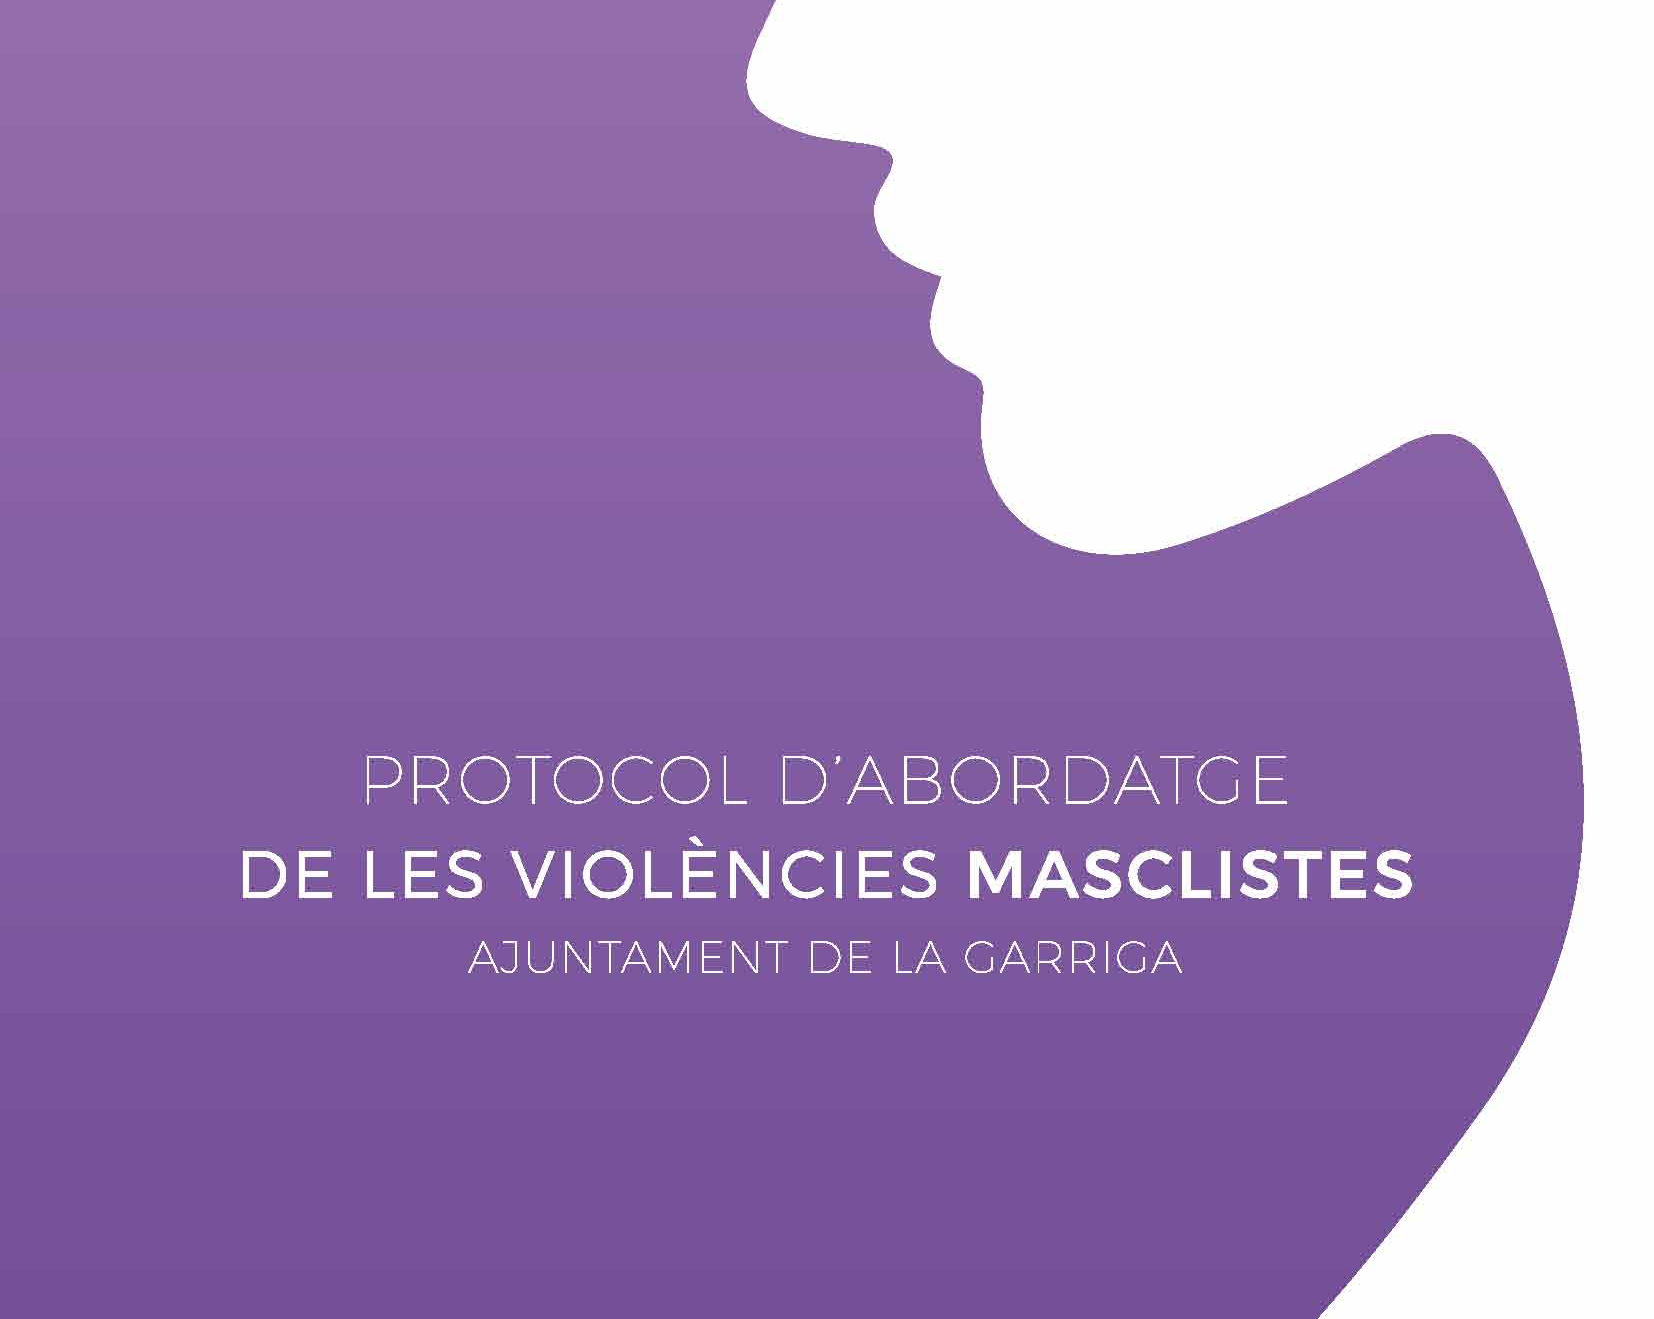 Presentació del Protocol contra la violència masclista